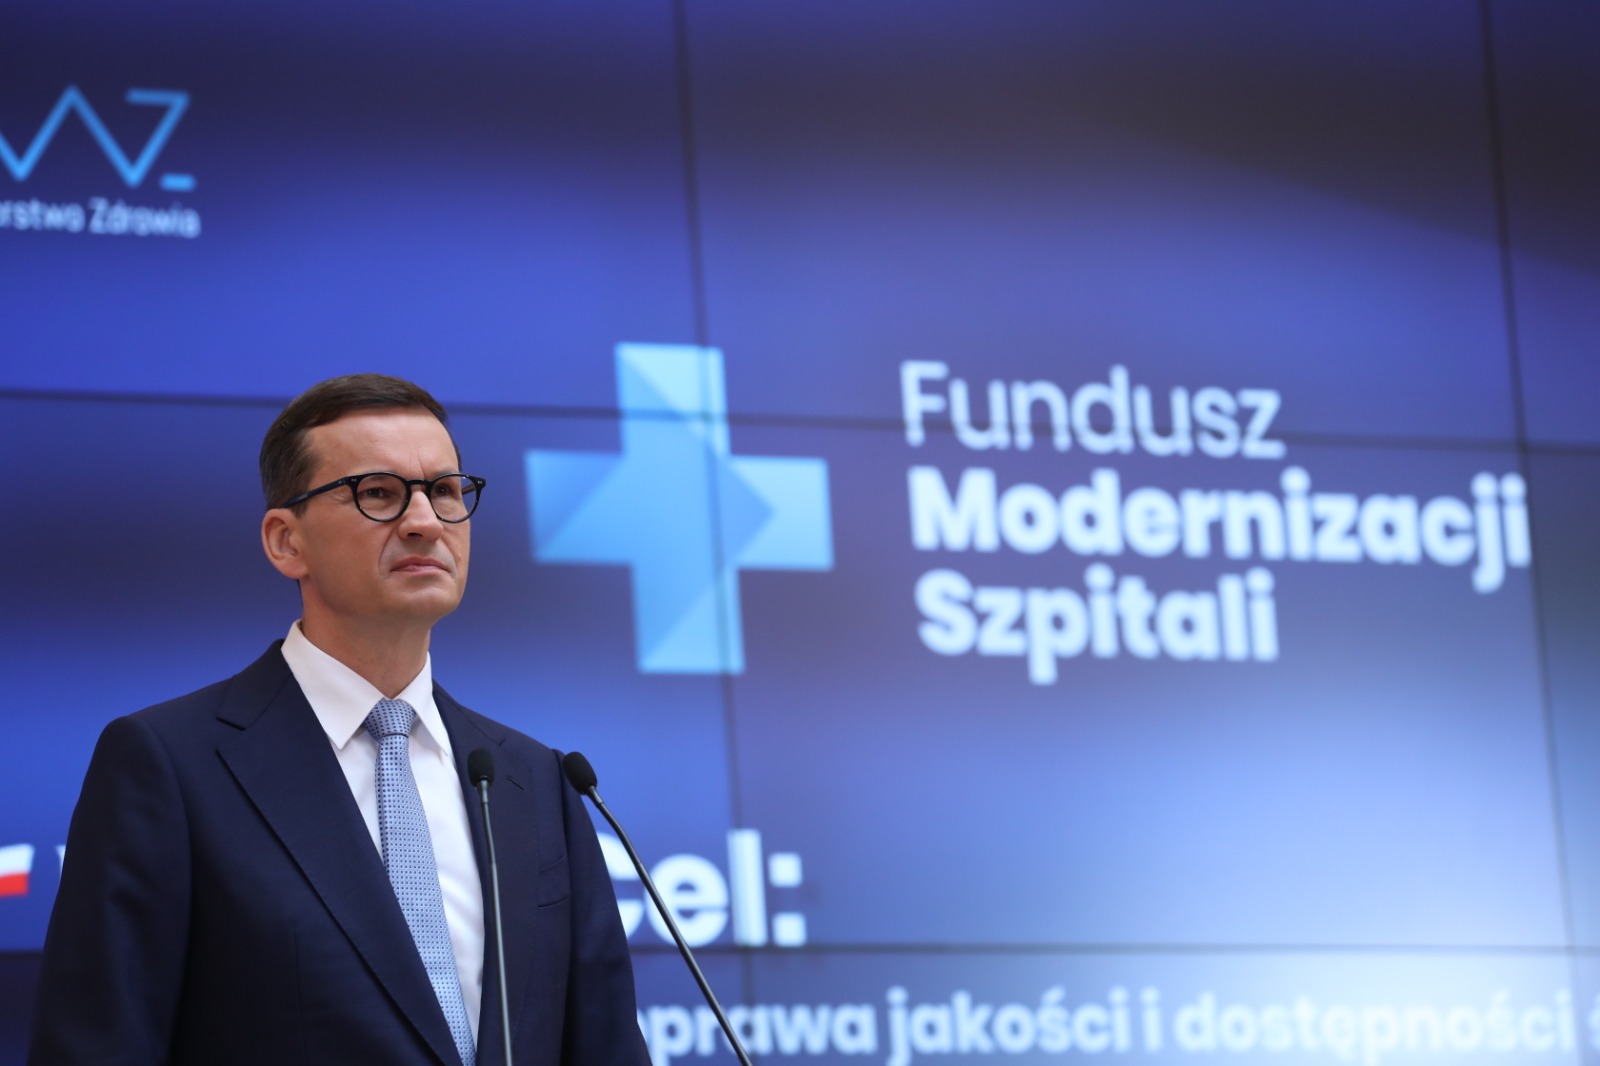 Modernizacja szpitali jest ważną częścią Polskiego Ładu. Rząd na czele z Mateuszem Morawieckim powołuje Fundusz Modernizacji Szpitali w wysokości 7 miliardów złotych, który będzie służył podniesieniu standardów polskich placówek medycznych.